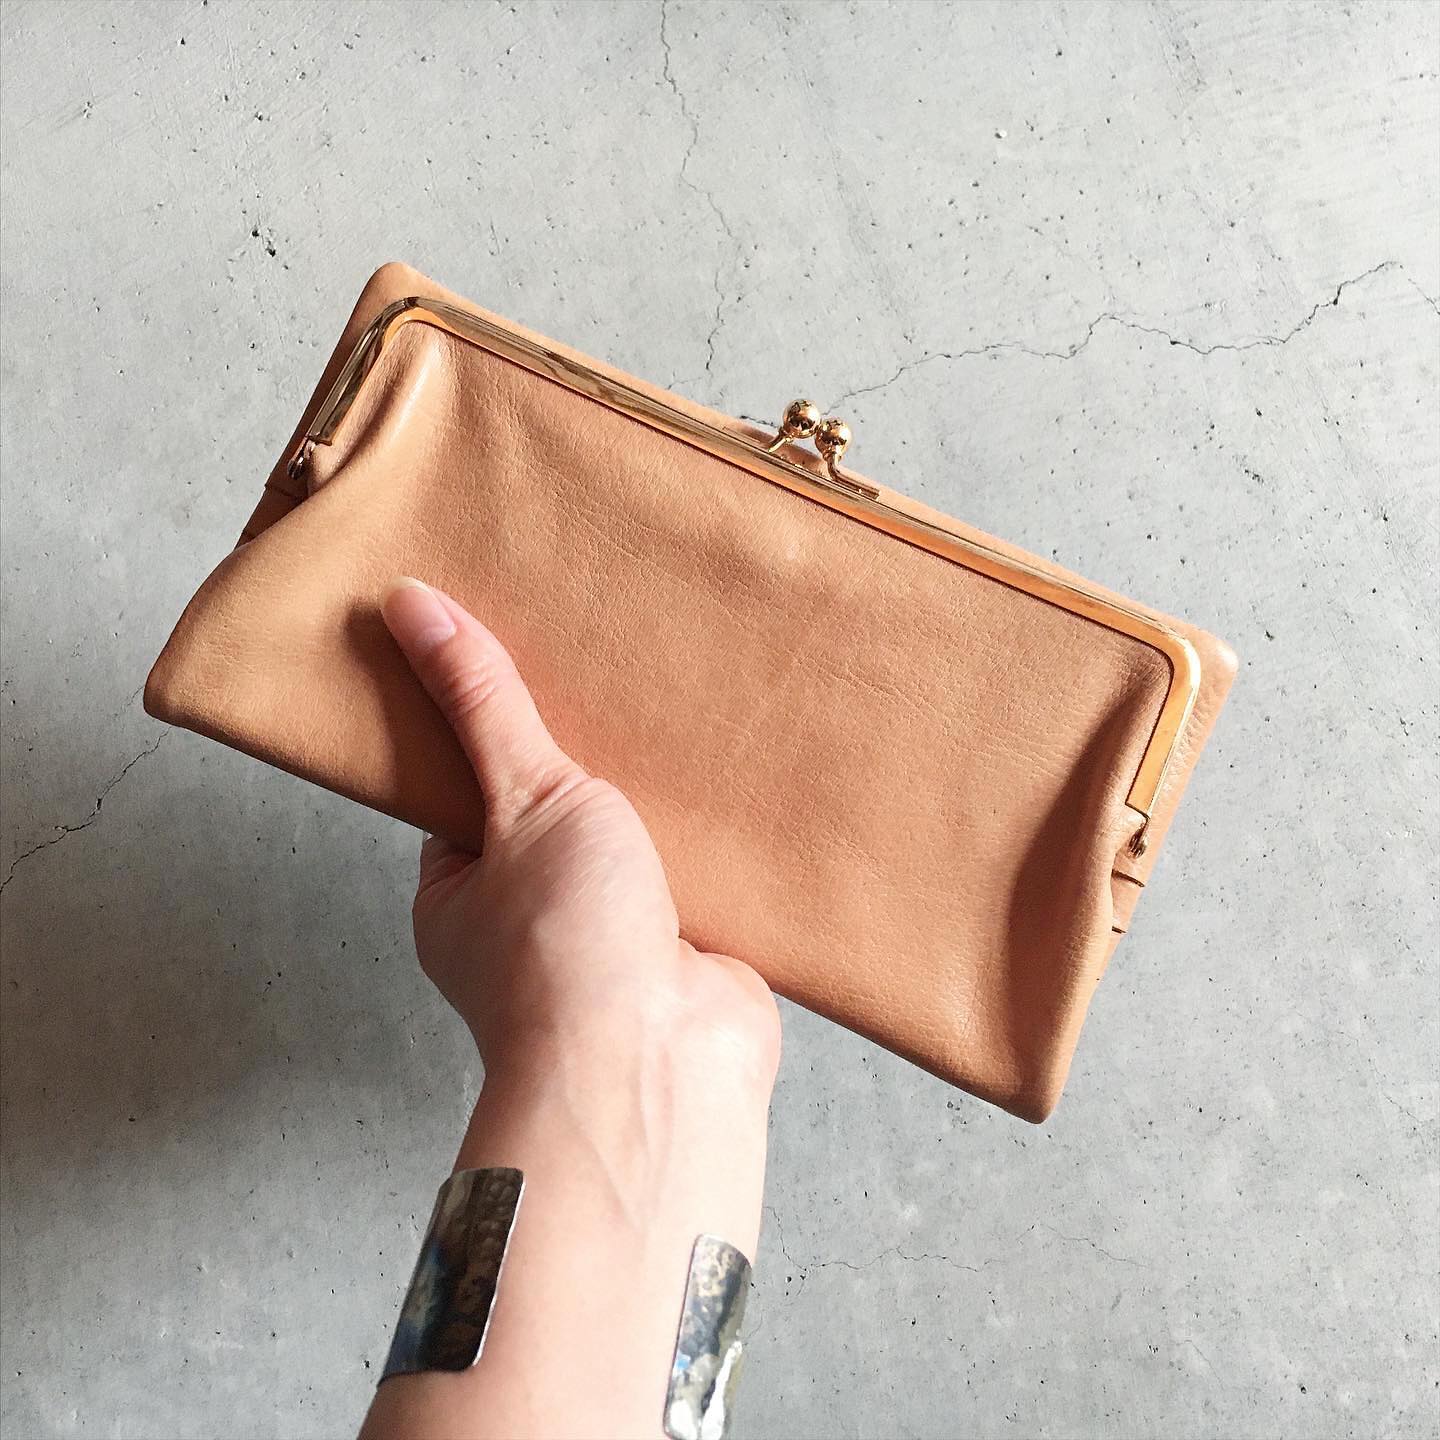 ＊Damasquina GAMAGUCHIシリーズの長財布はバッグの様なデザイン。大人っぽいすっきりとした仕様と革の経年変化で使い込むとより雰囲気が落ち着き良くなります。現代の生活スタイルにあわせて、スマホ＊1や通帳・パスポートなど収納アレンジ出来る作りです。手に持つだけでお洋服と馴染みクラシカルな印象でお使い頂けます。詳しくはWEB SHOPをご覧下さい。＊1 スマホの形状によっては収納できない場合がございます。詳しくはお問い合わせ下さいませ。